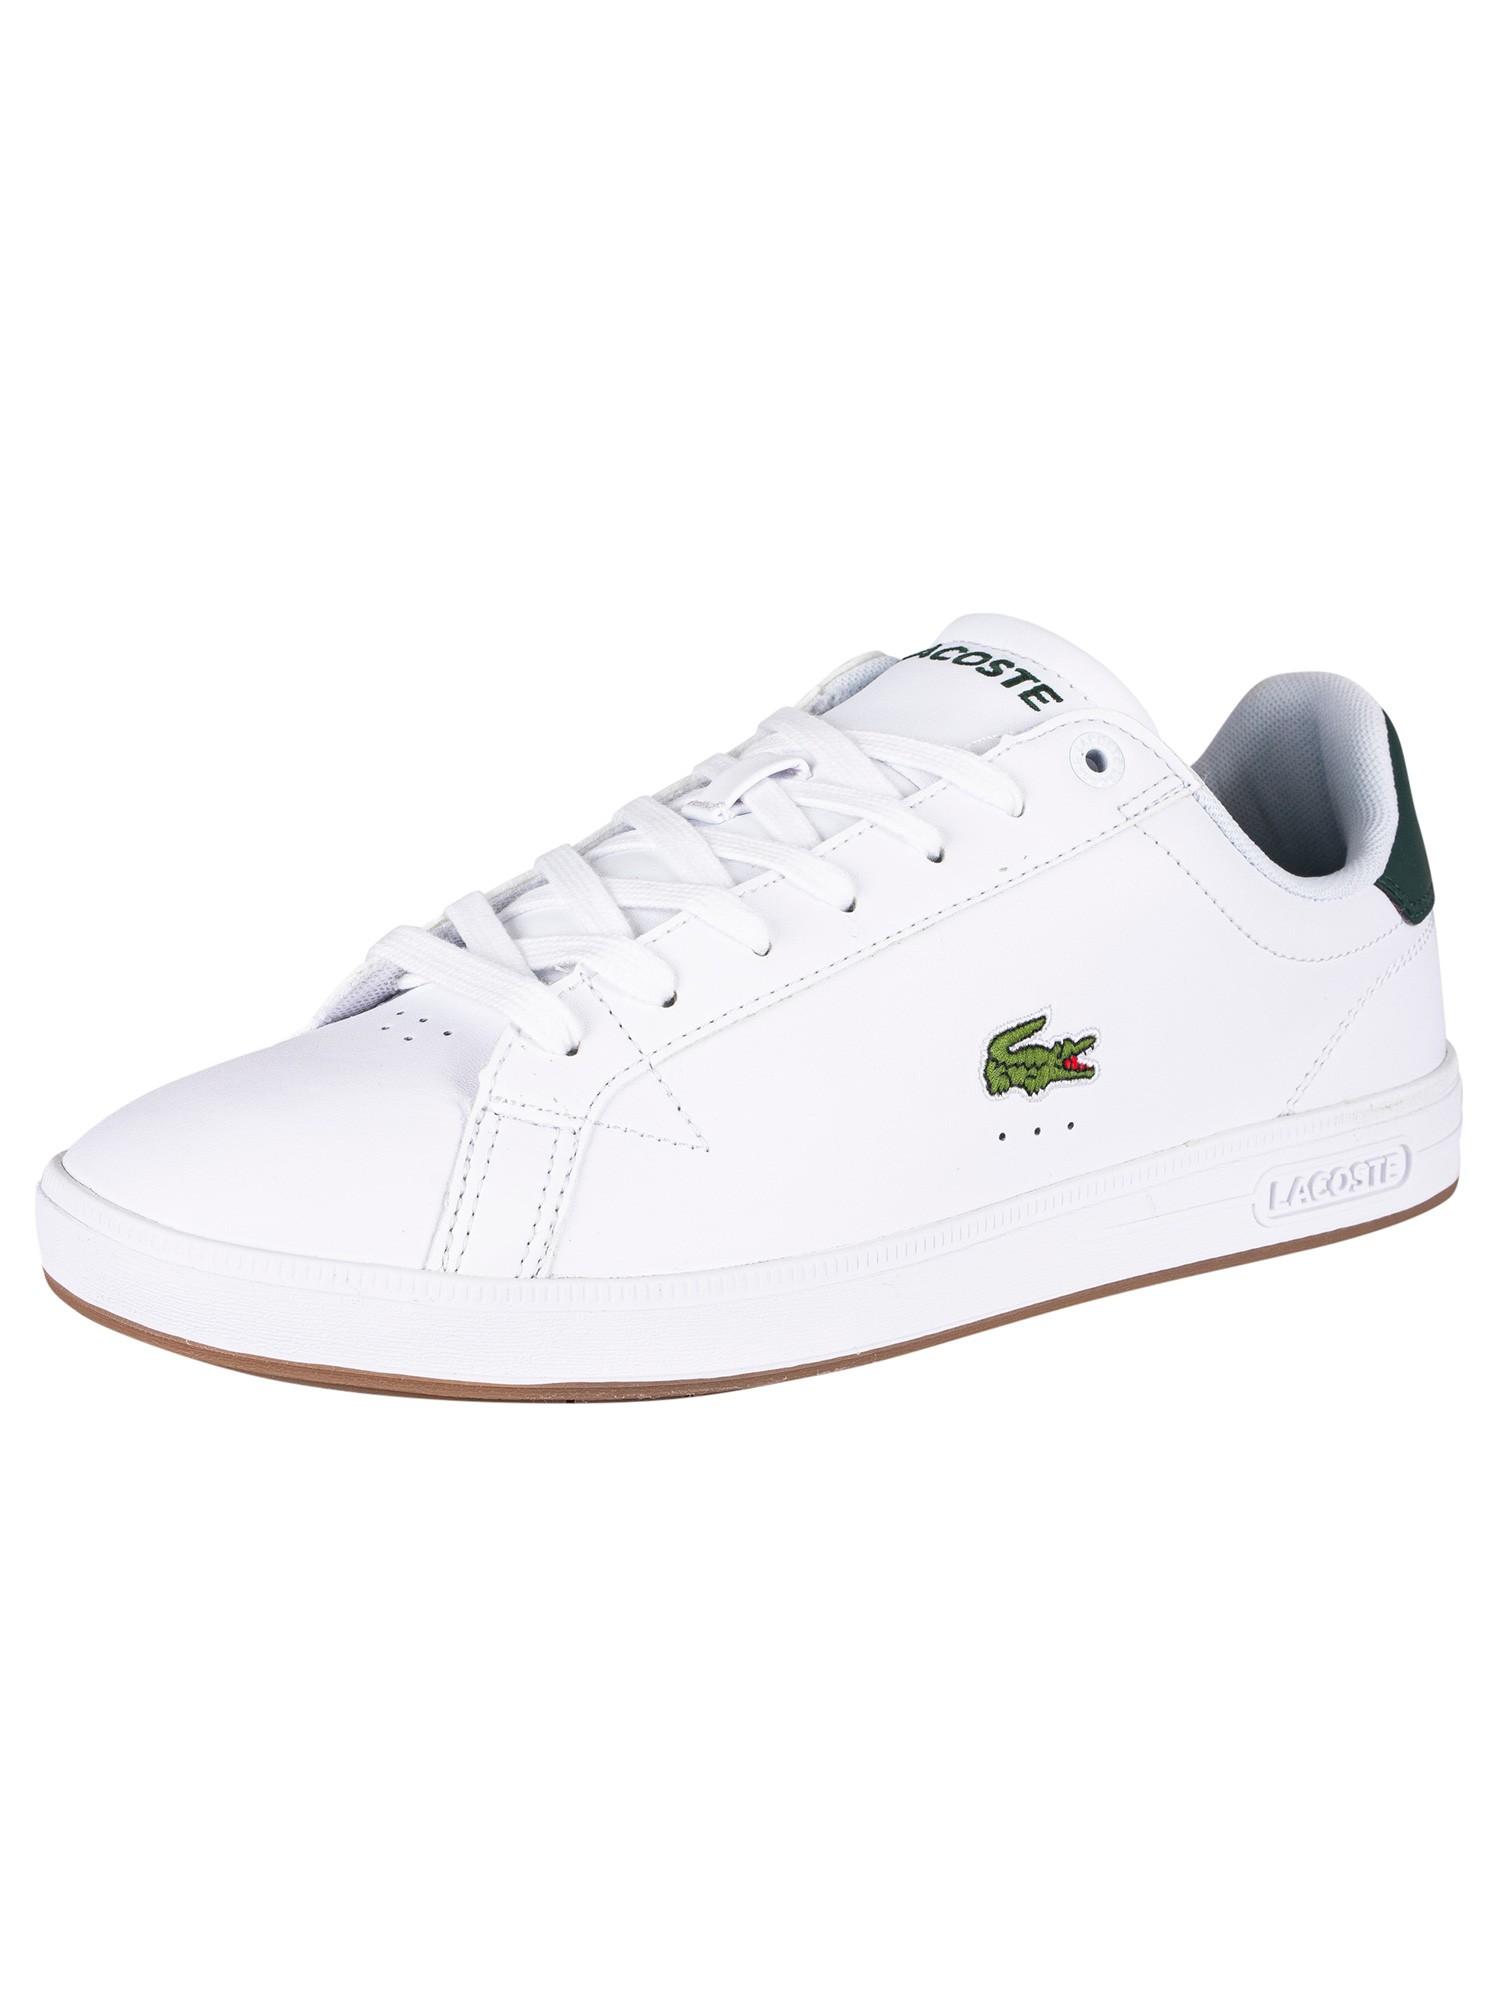 Lacoste Men's White Graduate Pro Sma Leather Sneakers